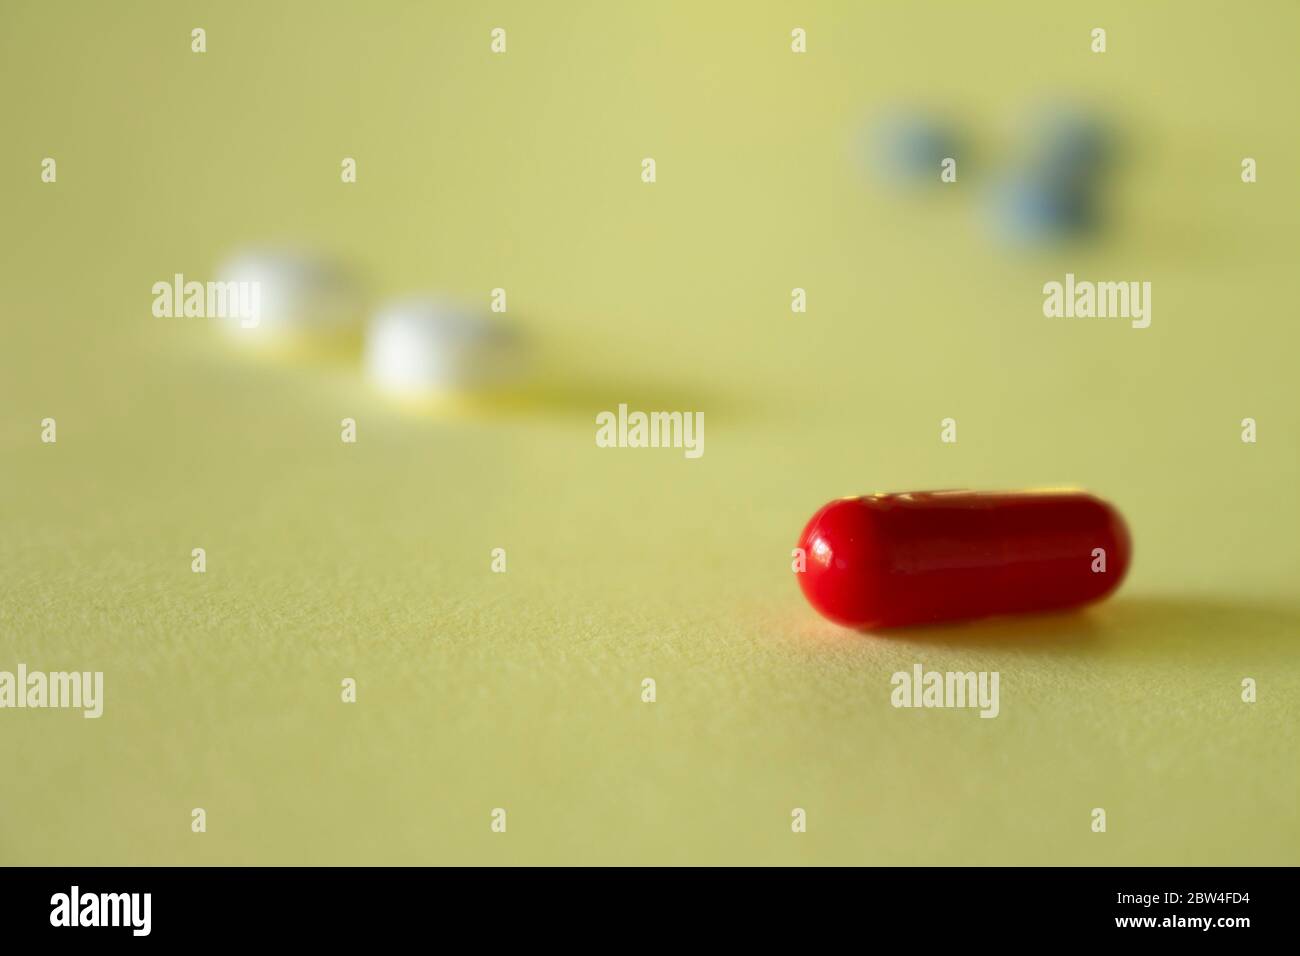 Farmaci con farmaci per trattamenti medici. Medicinali per uso legale nell'uomo. Foto Stock